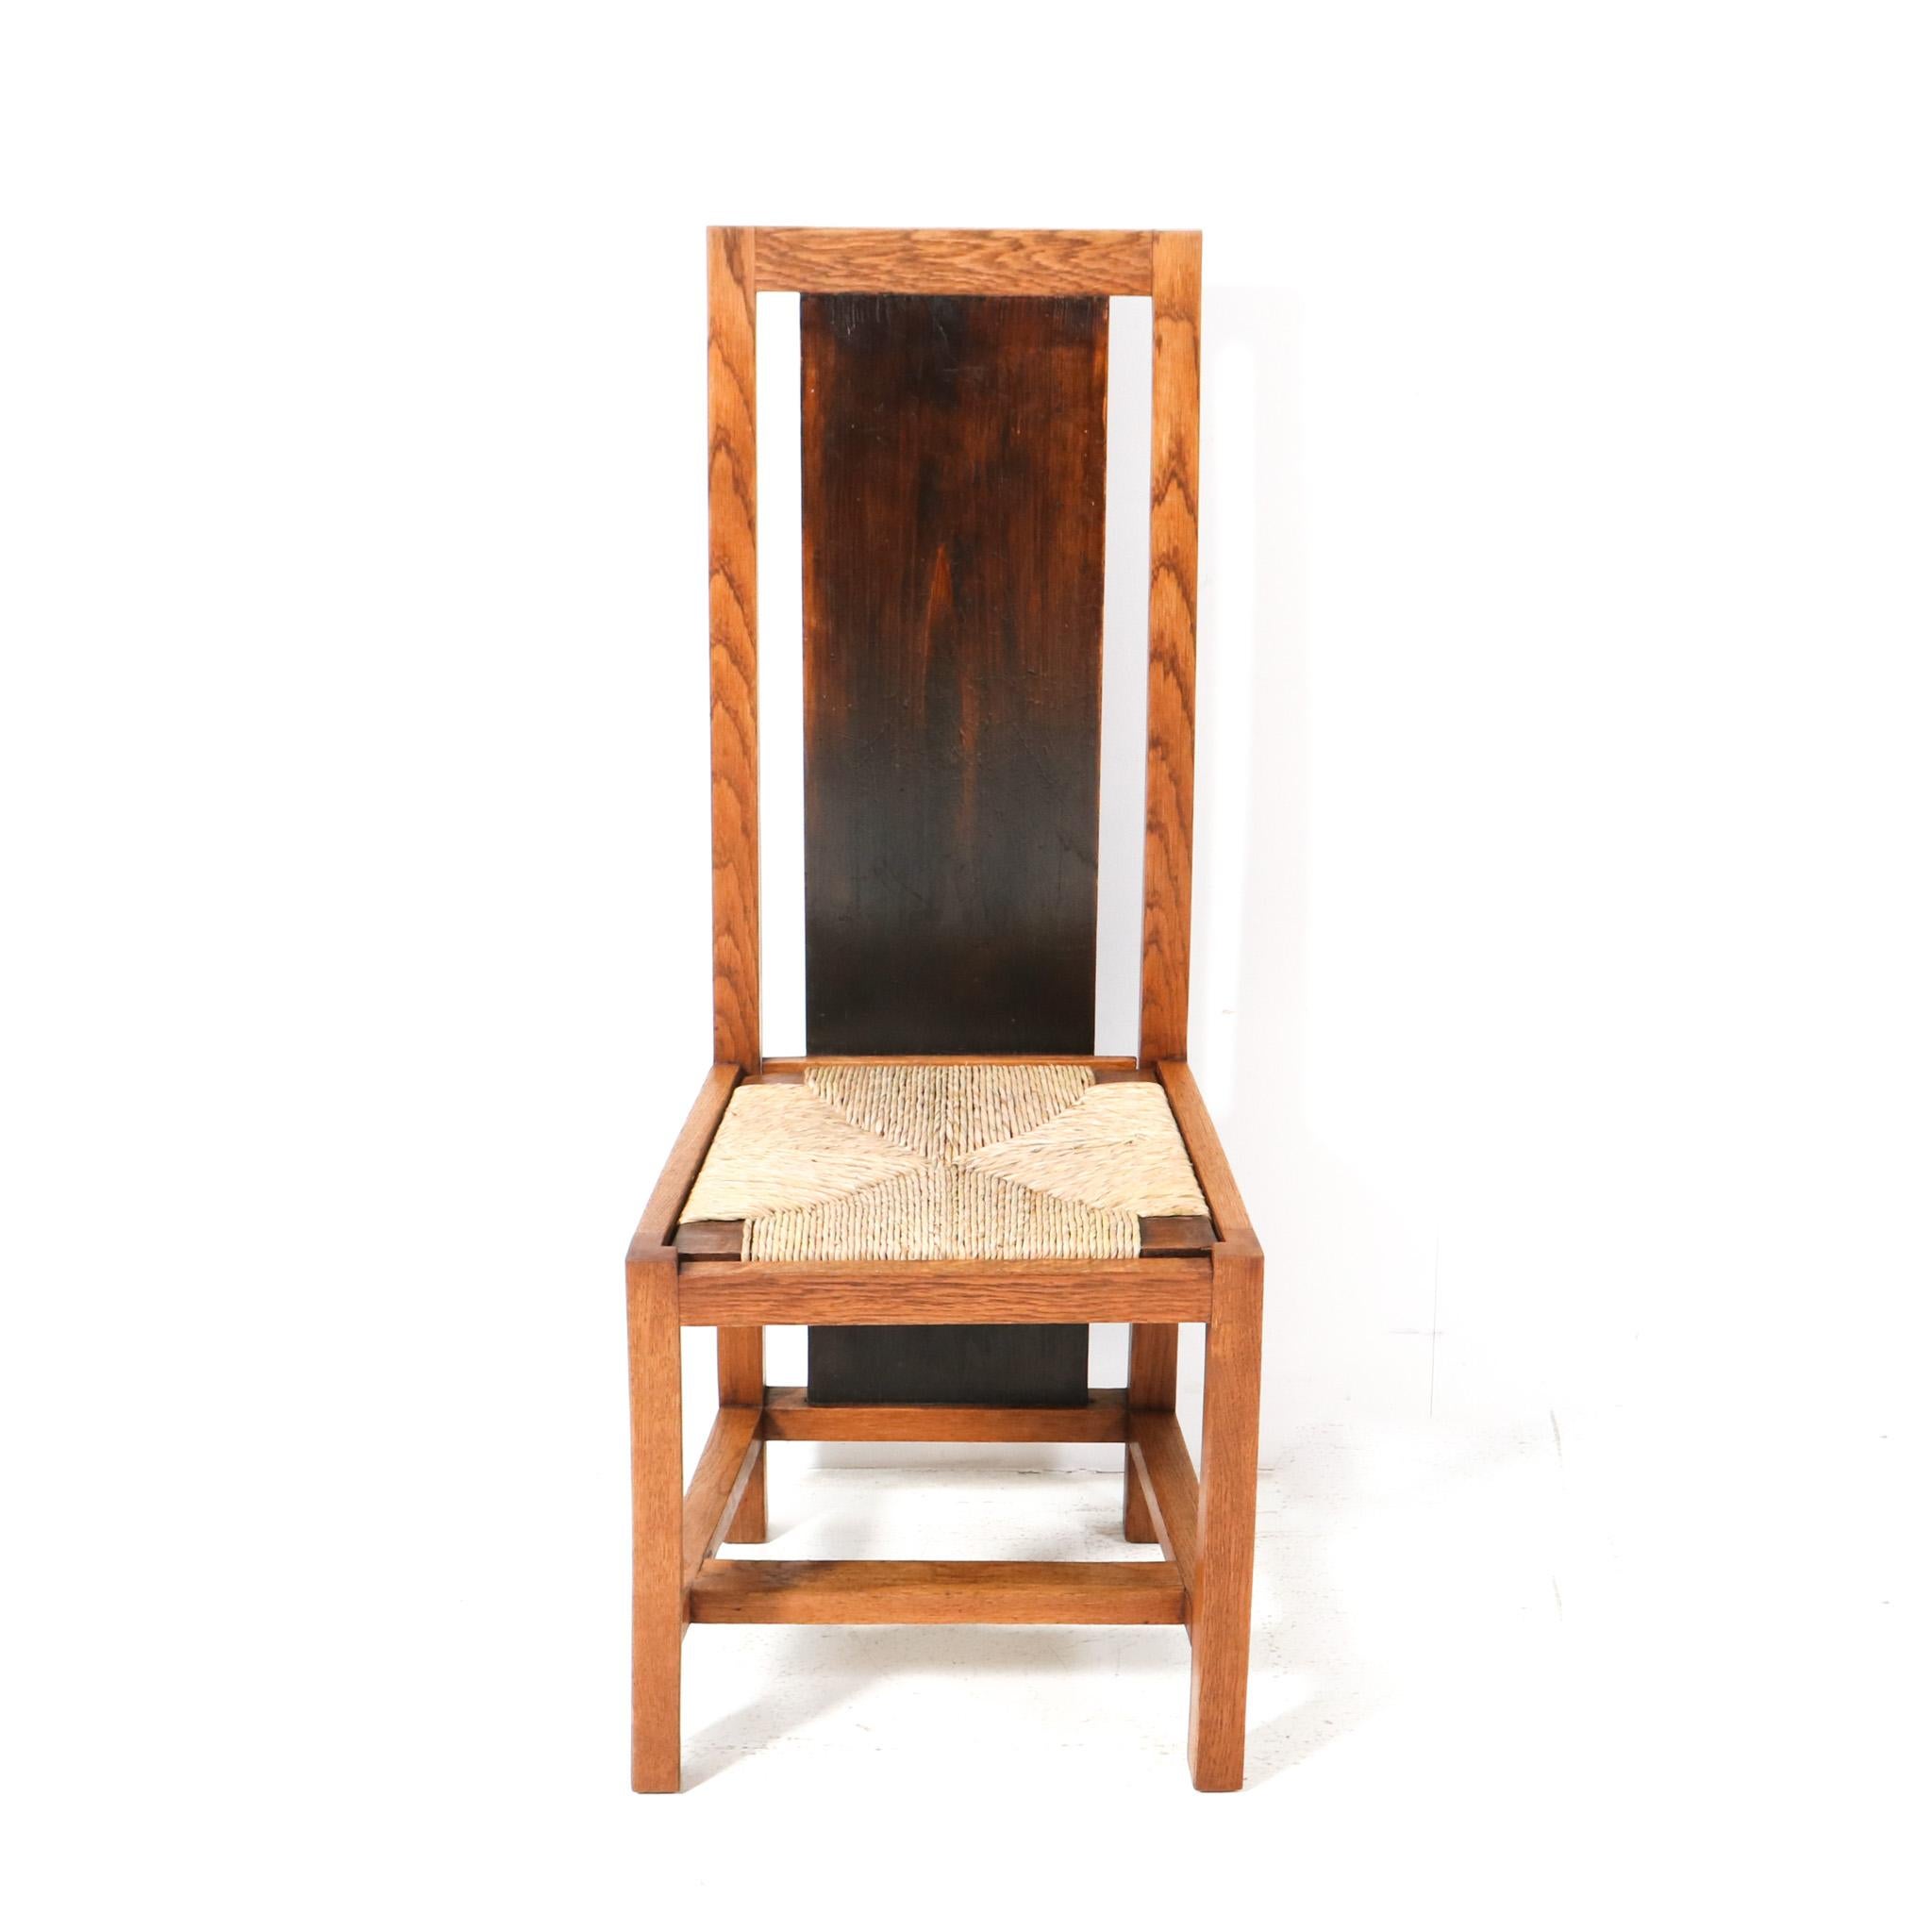 Prächtiger und äußerst seltener Art Deco Modernist Stuhl mit hoher Rückenlehne.
Entwurf von Cor Alons.
Auffälliges niederländisches Design aus den 1920er Jahren.
Massiver Eichenrahmen mit original dunkel gebeizter Rückseite.
Der Eilsitz ist erneuert